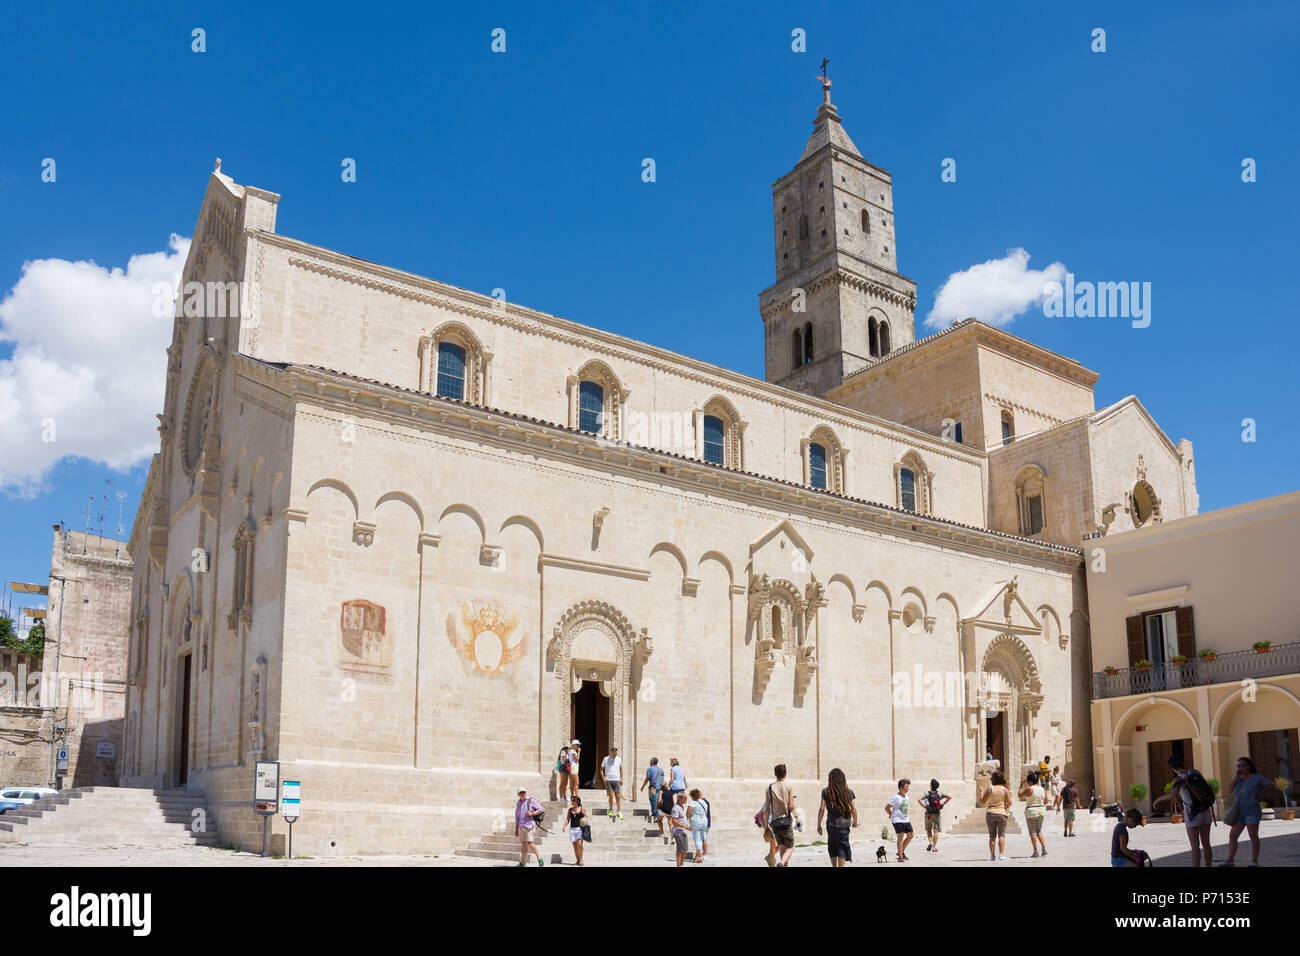 MATERA, ITALIE 12 Août 2017 - Vue de la cathédrale de Matera sous ciel bleu. Matera en Italie l'UNESCO Capitale Européenne de la Culture 2019 Banque D'Images